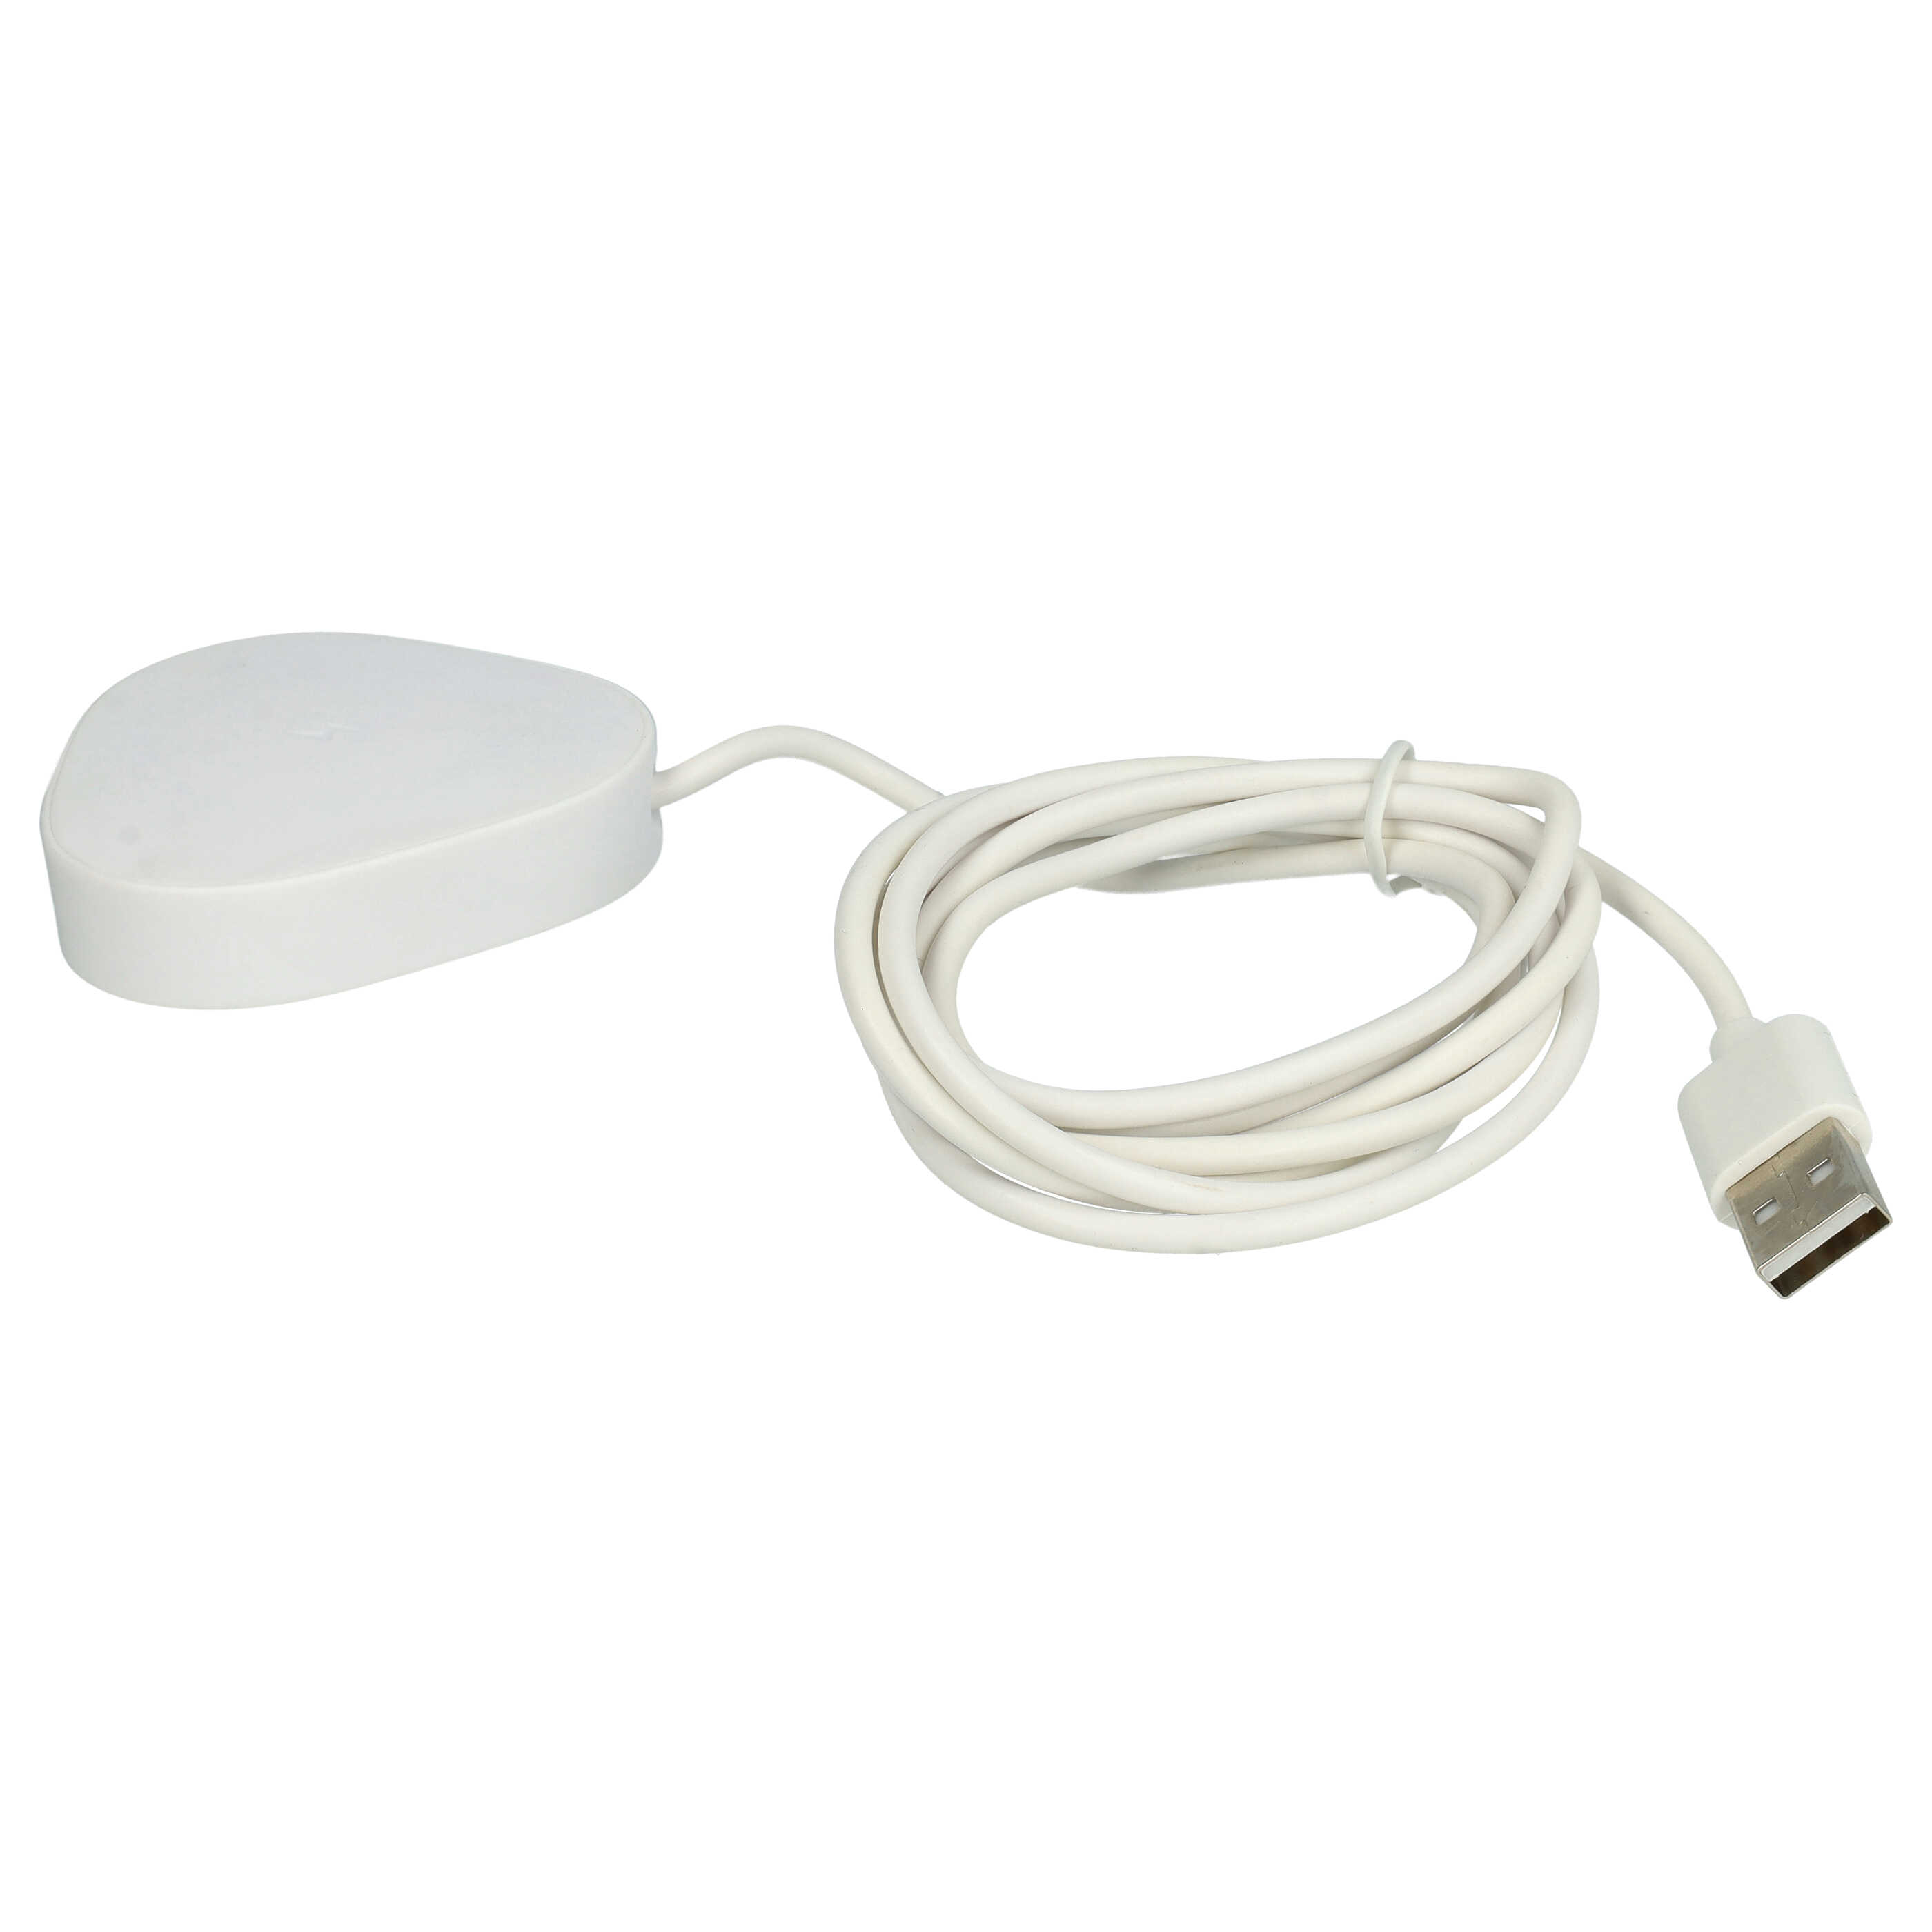 Ładowarka do głośnika Sonos zamiennik Sonos Wireless Charger LPS-05WB-I - podstawka + kabel, 145 cm, biały